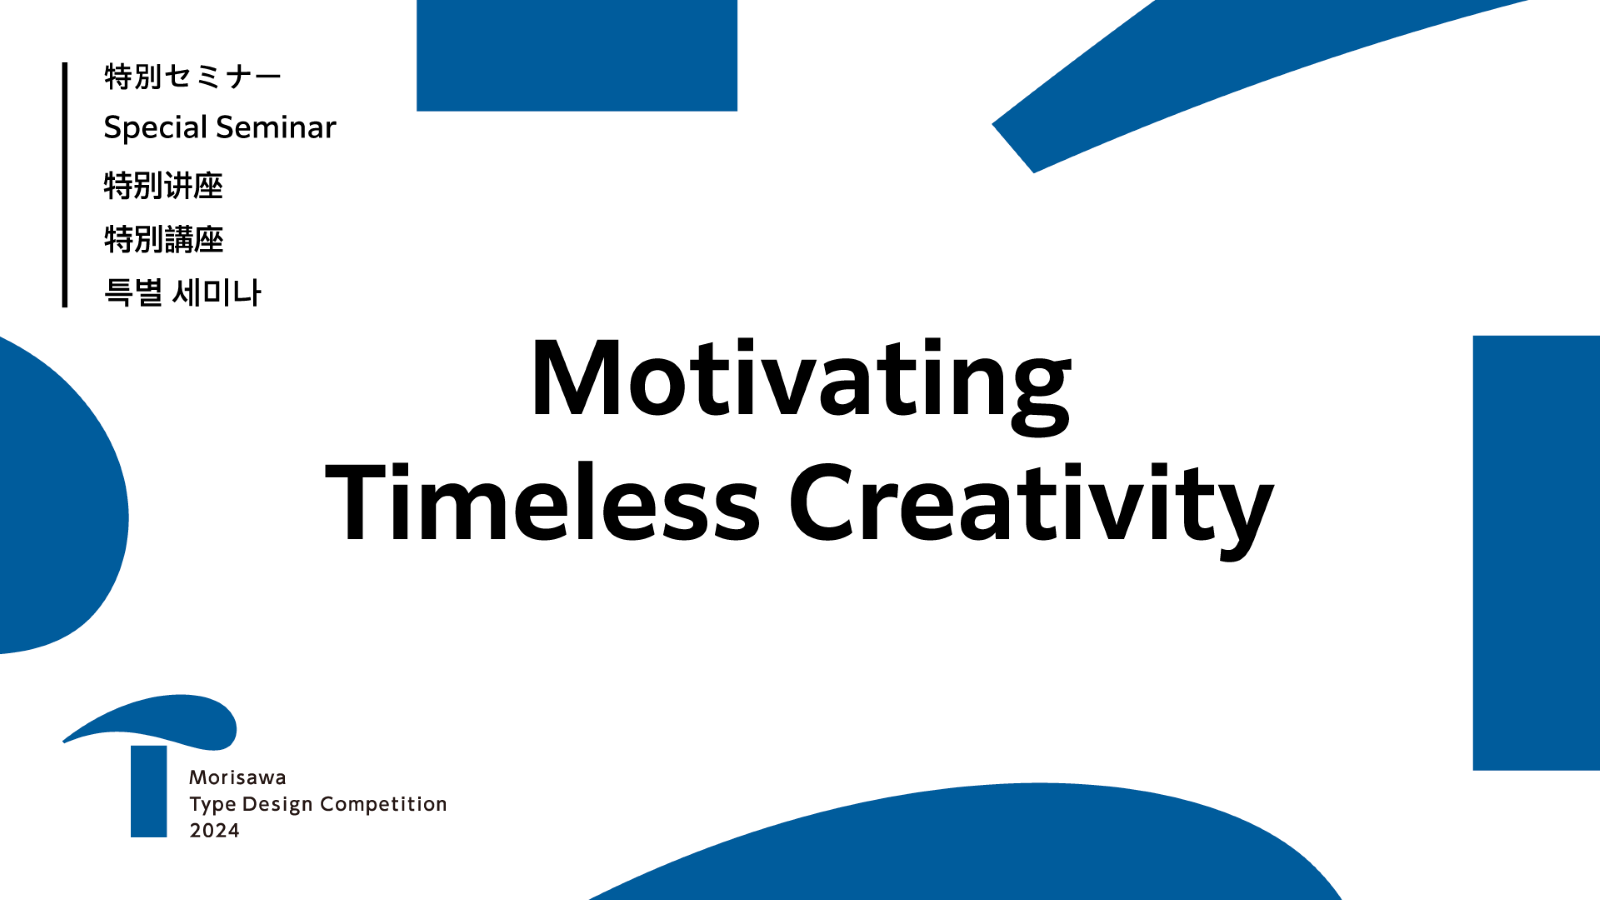 線上特別講座「Motivating Timeless Creativity」於今日發布